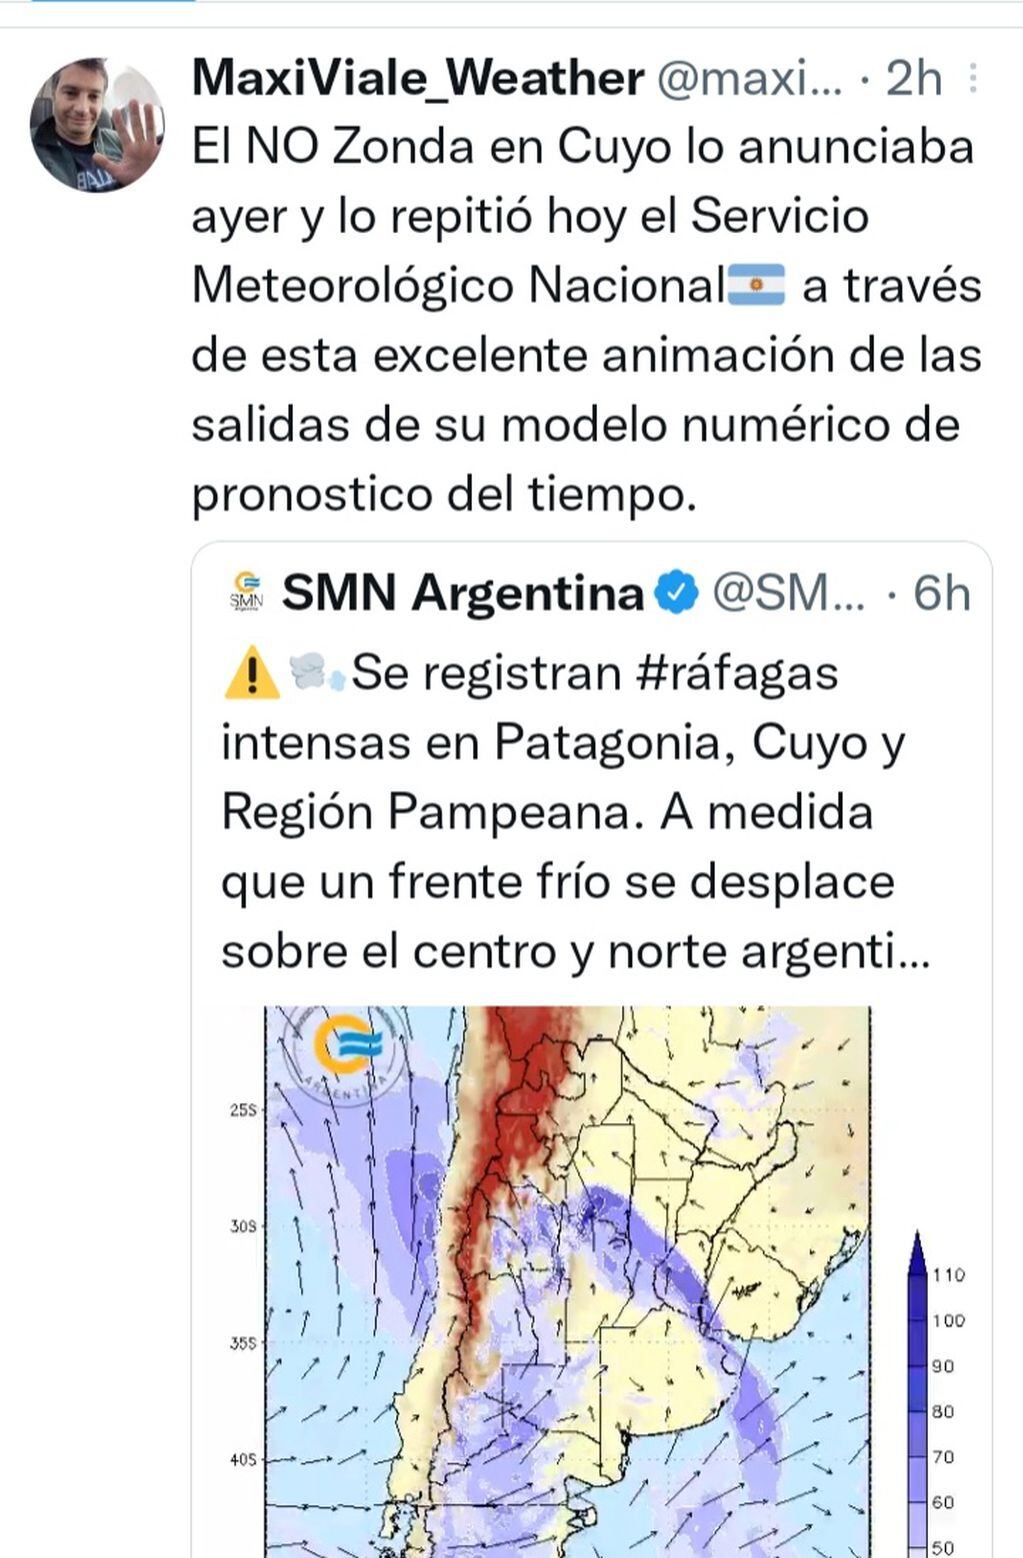 Posteo del especialista Maxi Viale en Twitter sobre el ingreso del frente frío.